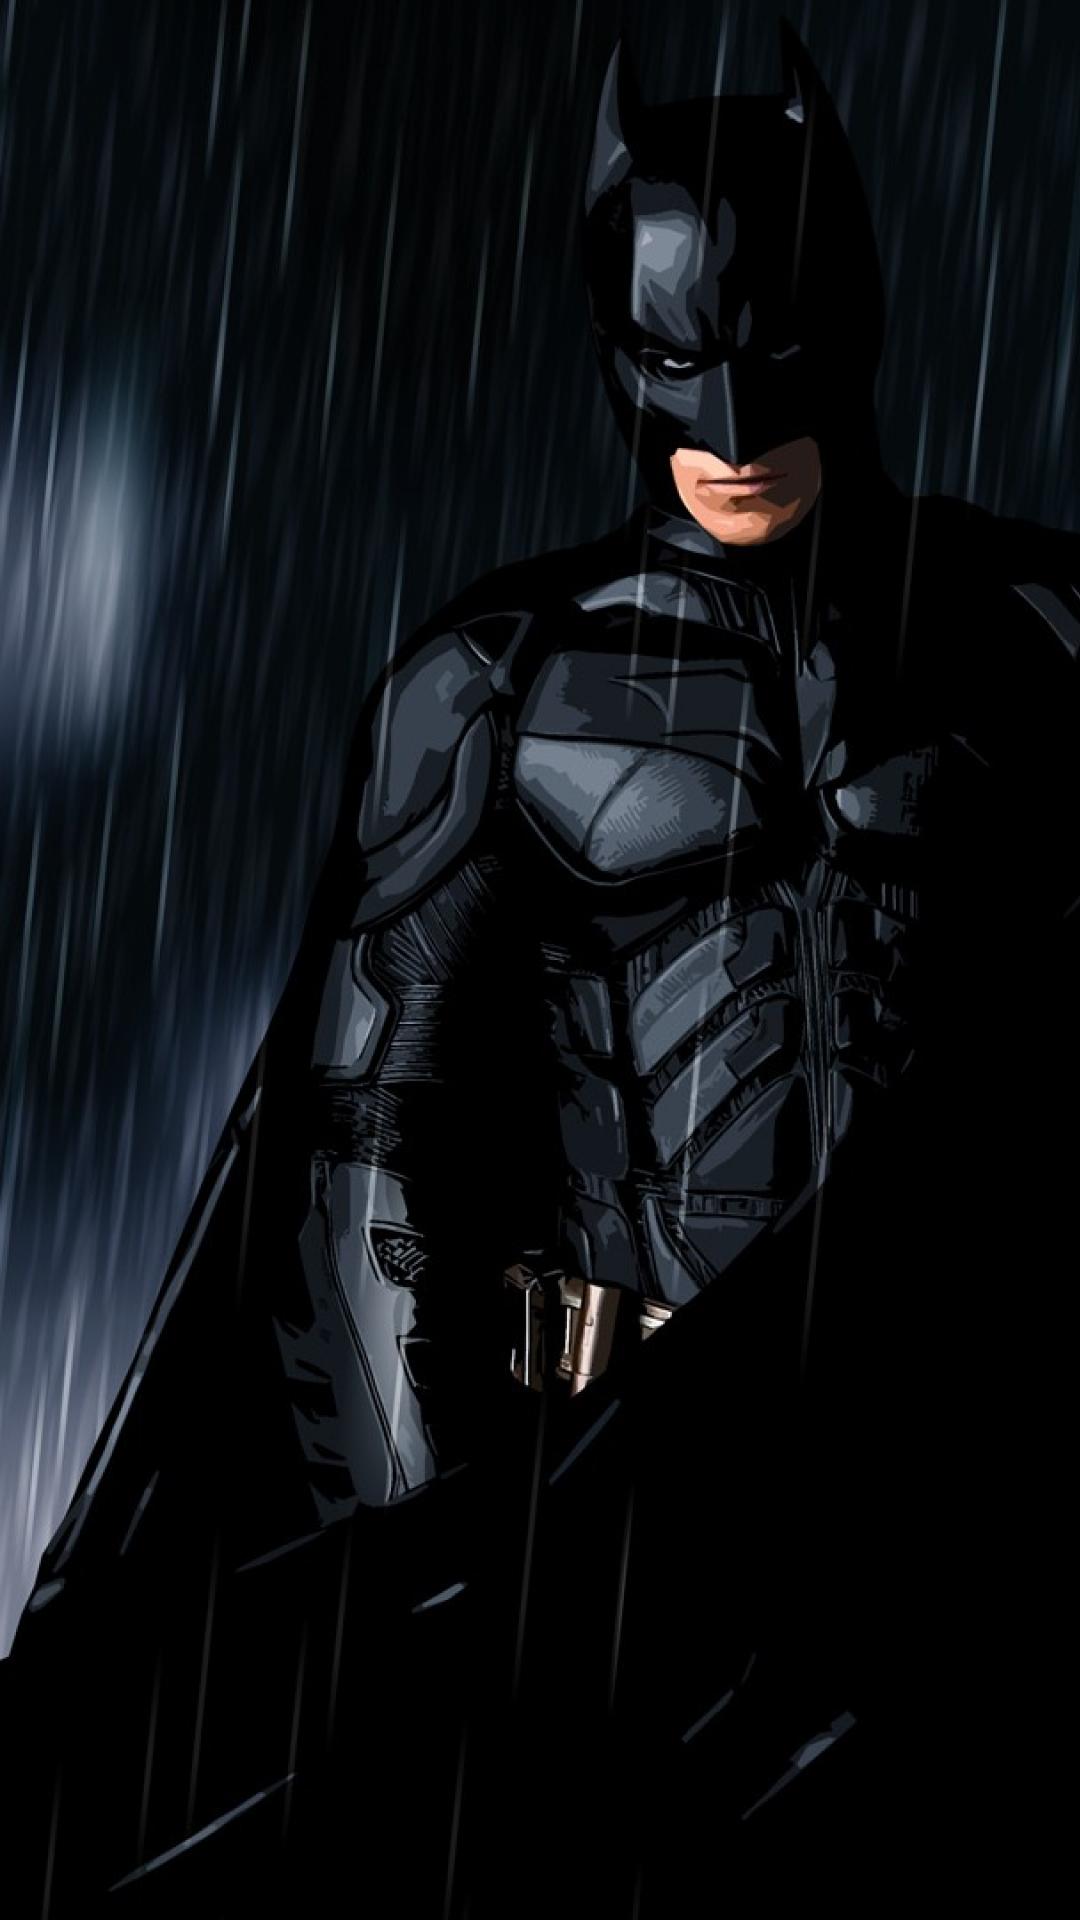 fondos de pantalla de batman para móvil hd,hombre murciélago,personaje de ficción,superhéroe,oscuridad,liga de la justicia